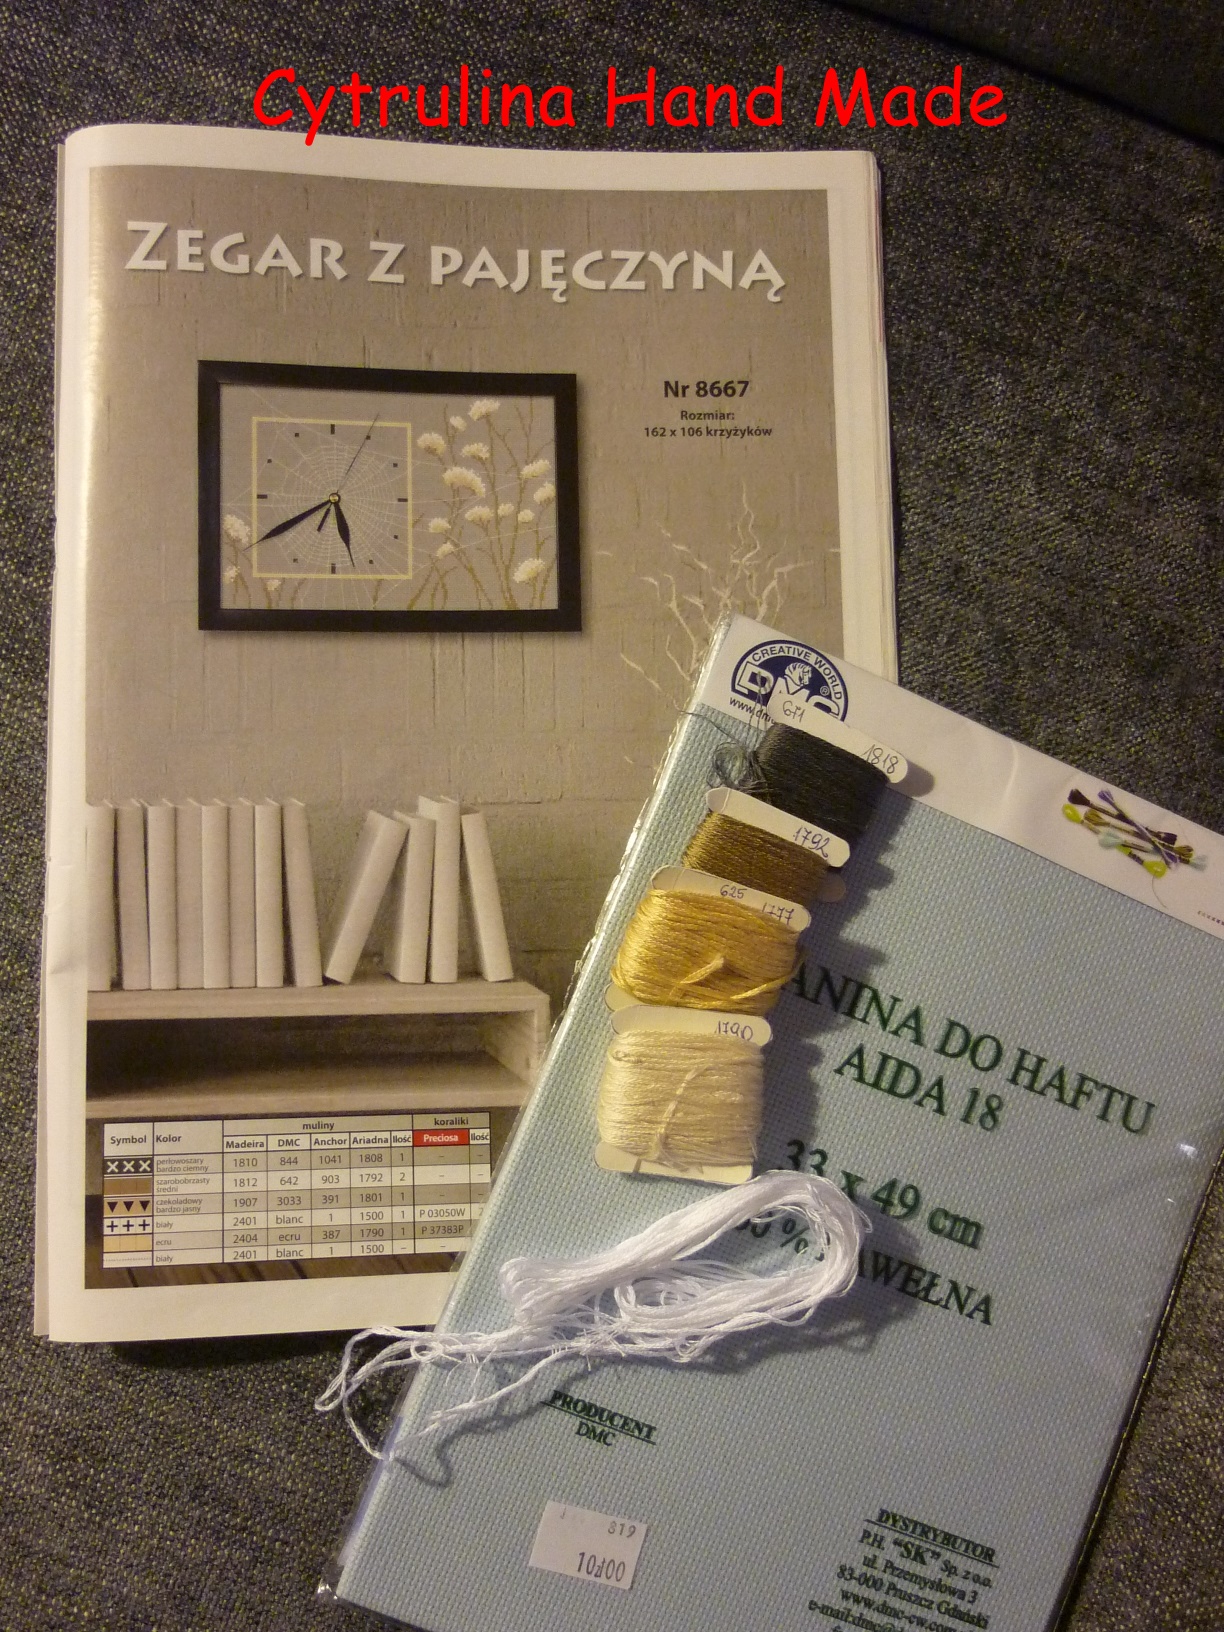 P1160919 - SAL "Zegar z pajęczyną" cz. 1